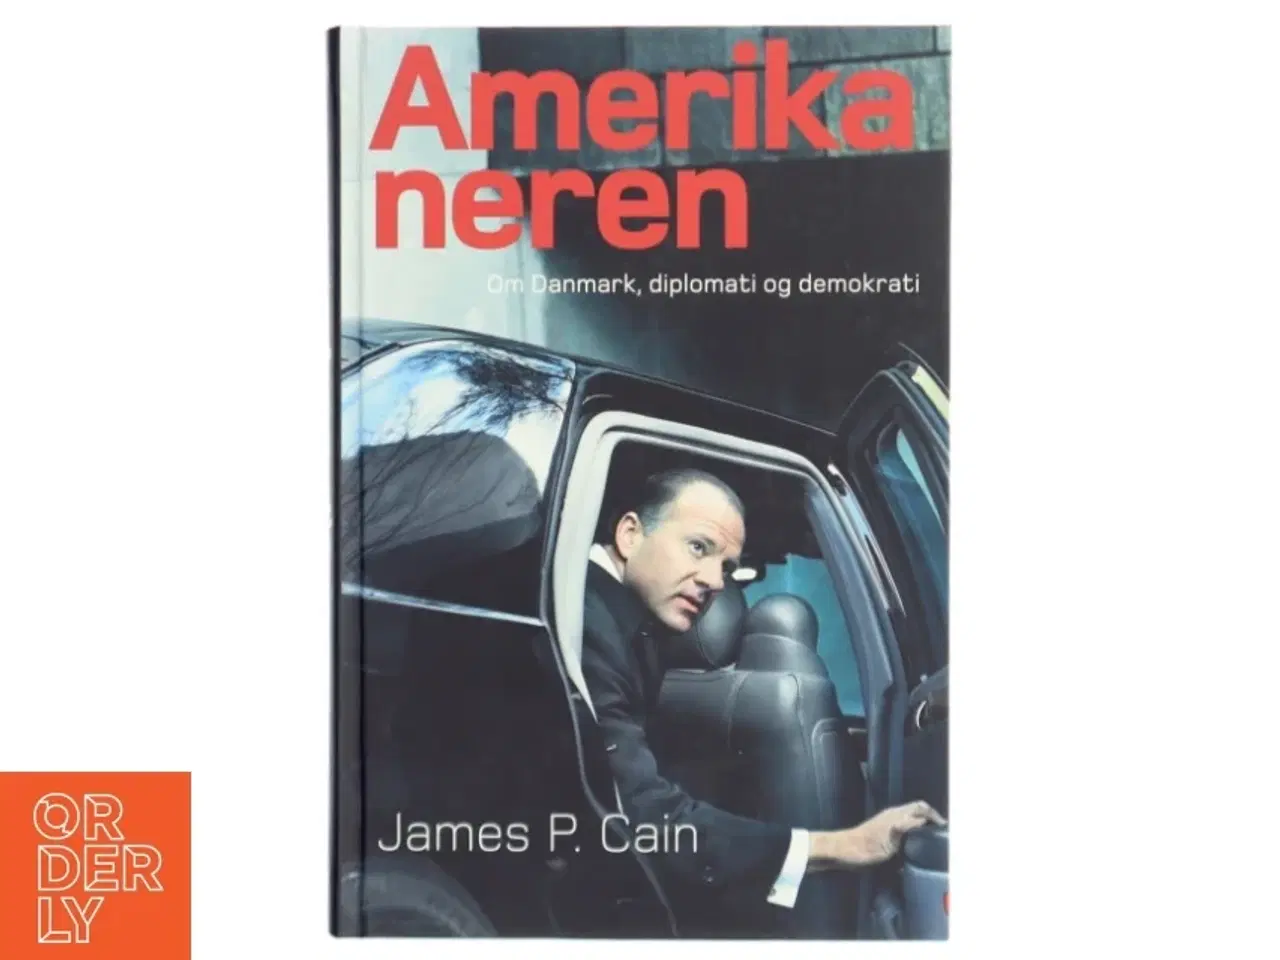 Billede 1 - 'Amerikaneren' af James P. Cain (bog) fra Gyldendal